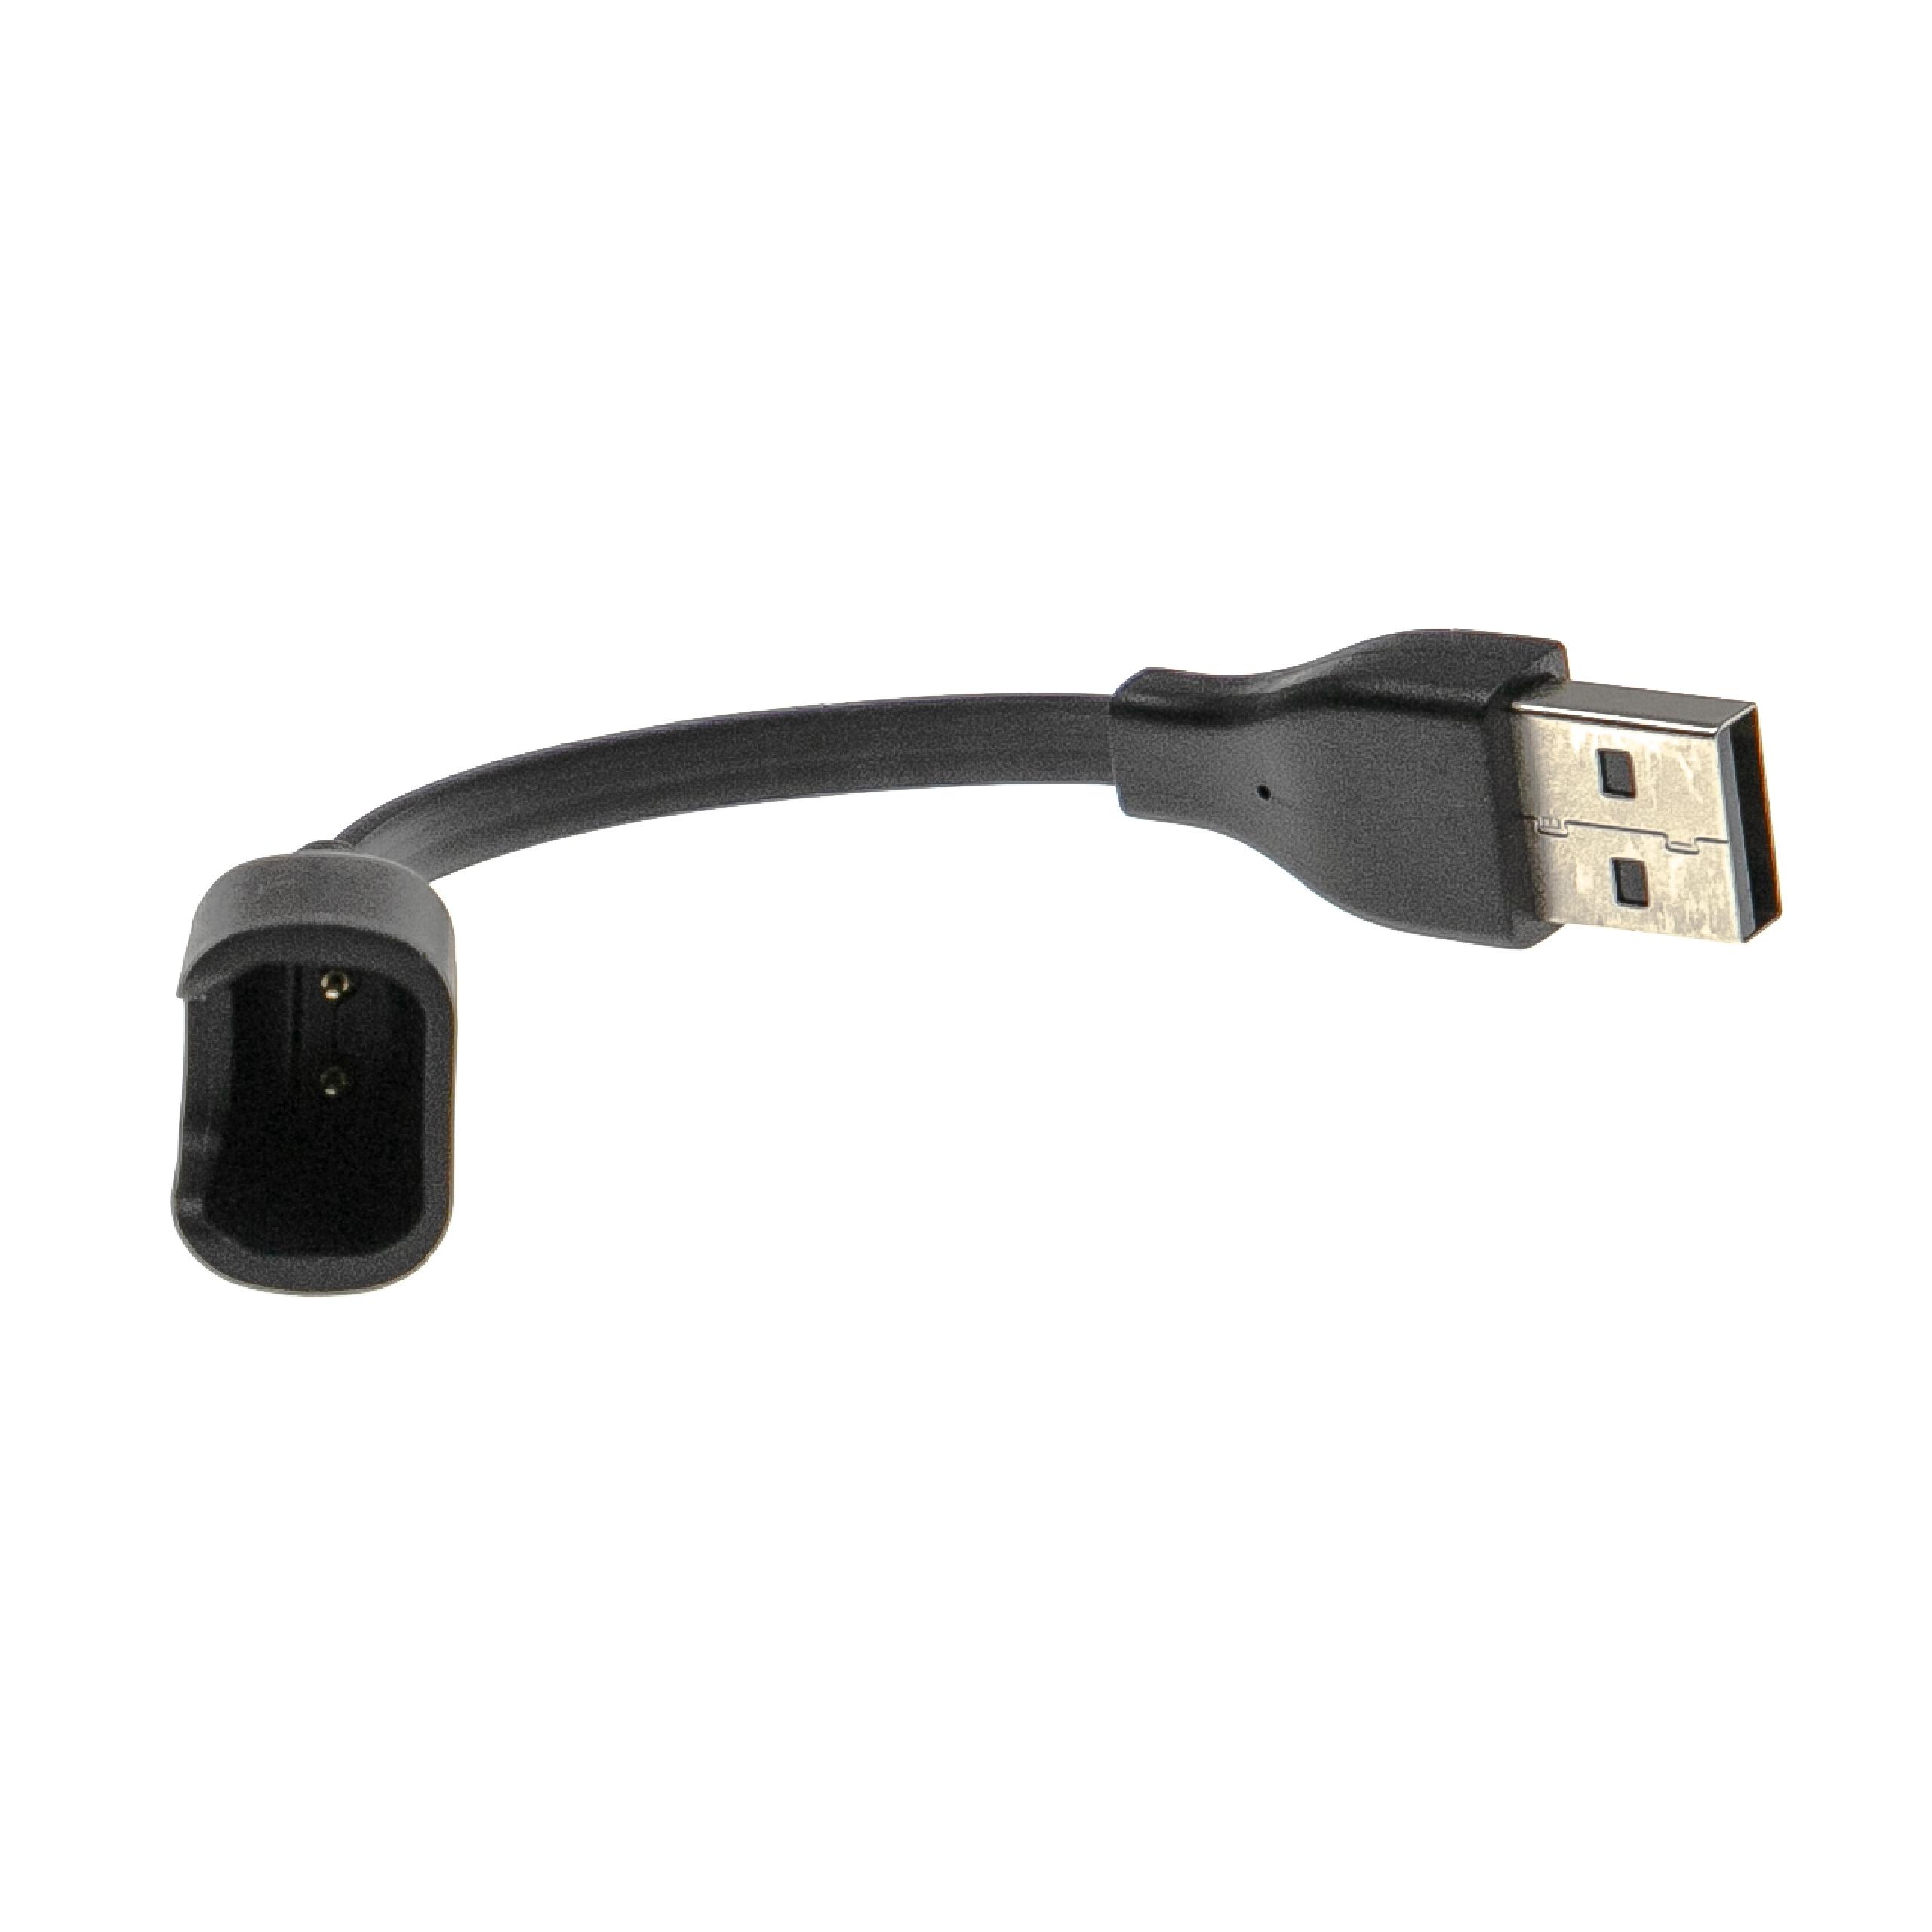 Câble de charge pour bracelet d'activité Huawei Honor et autres – câble de 12,5 cm, fiche USB